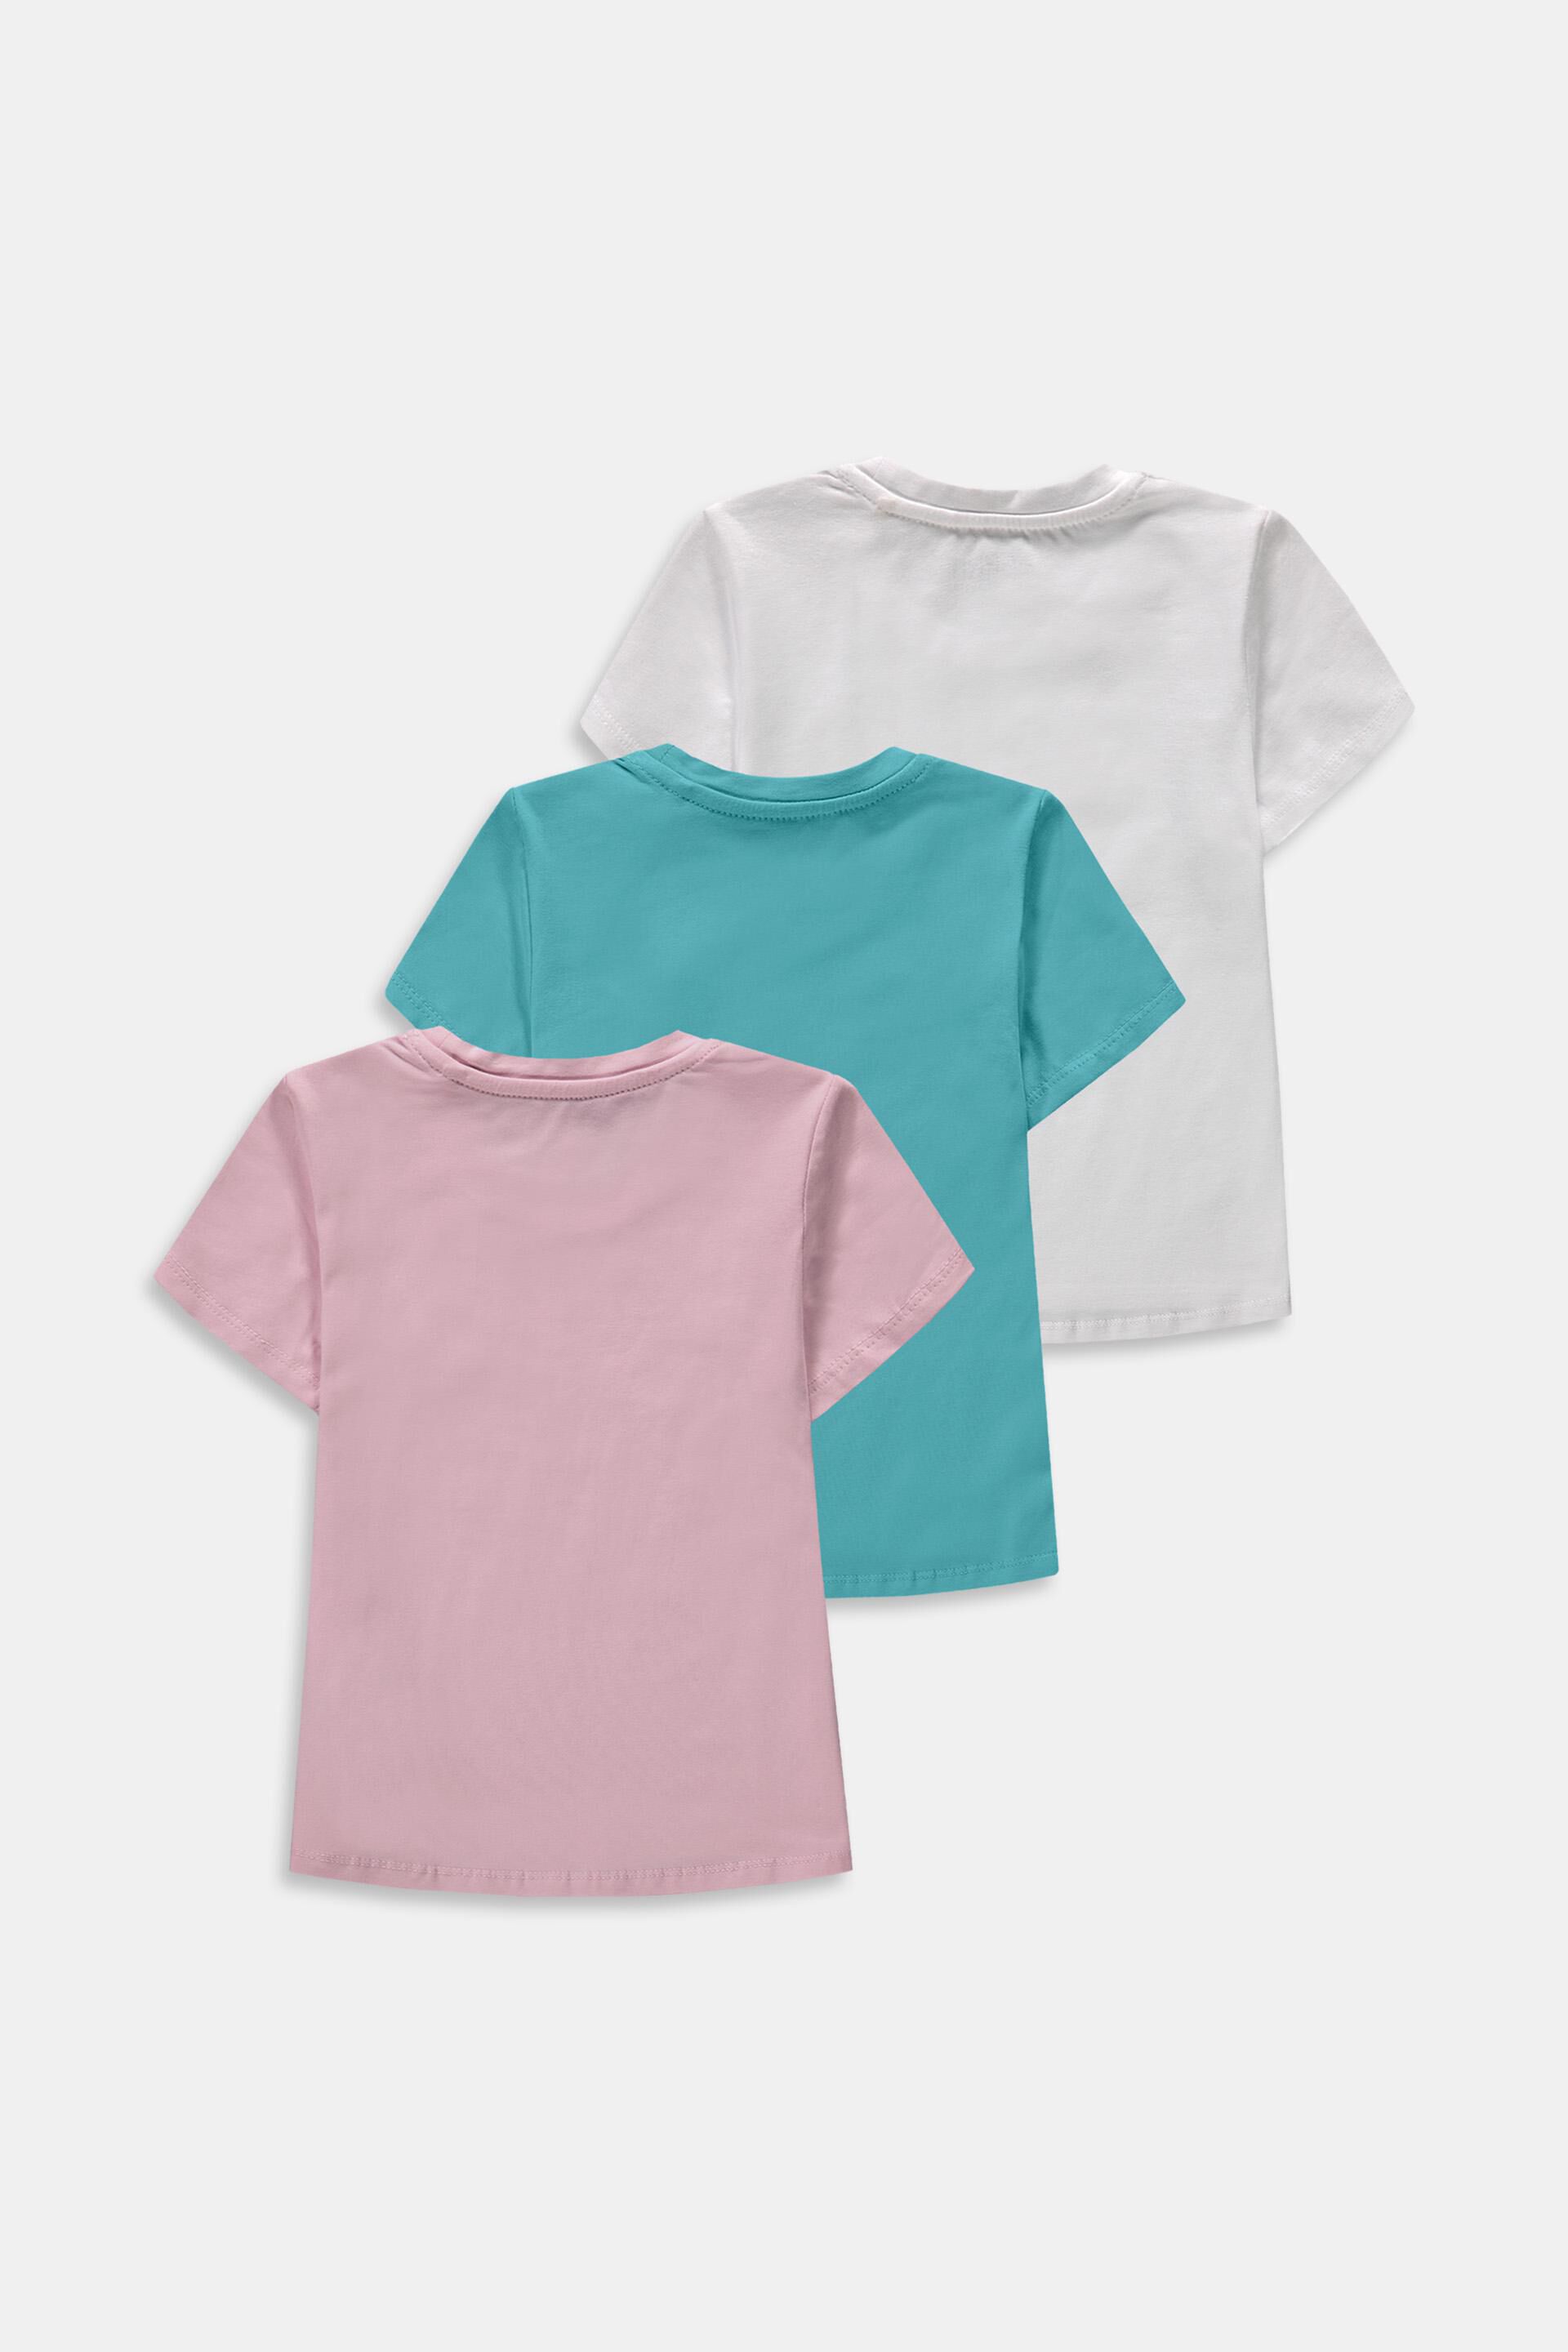 Esprit Outlet 3er-Pack T-Shirts mit kleinem Logo-Print